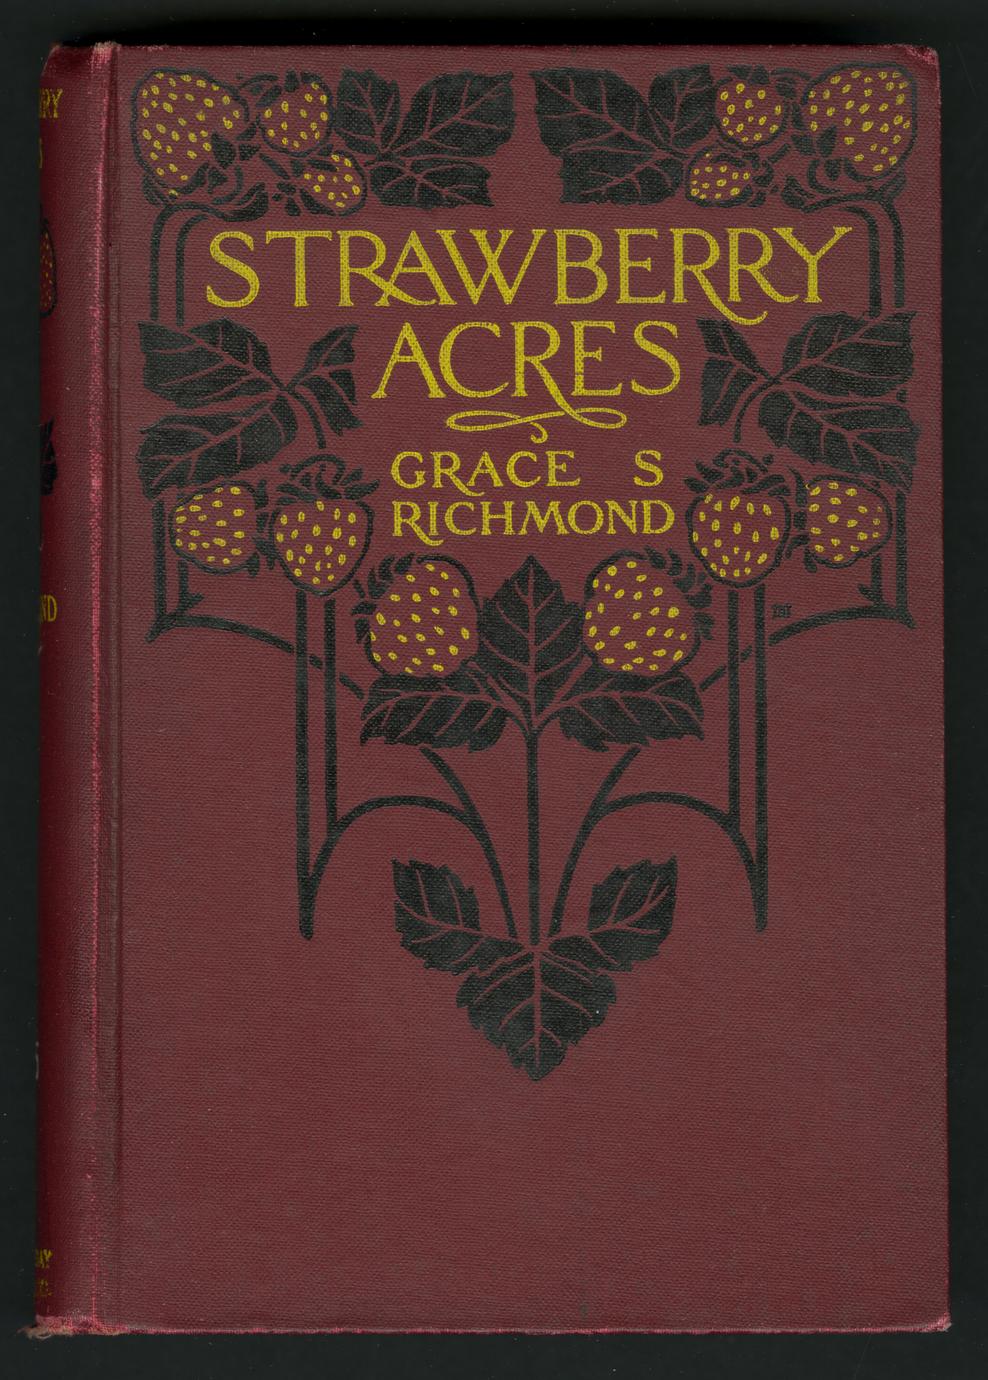 Strawberry acres (1 of 2)